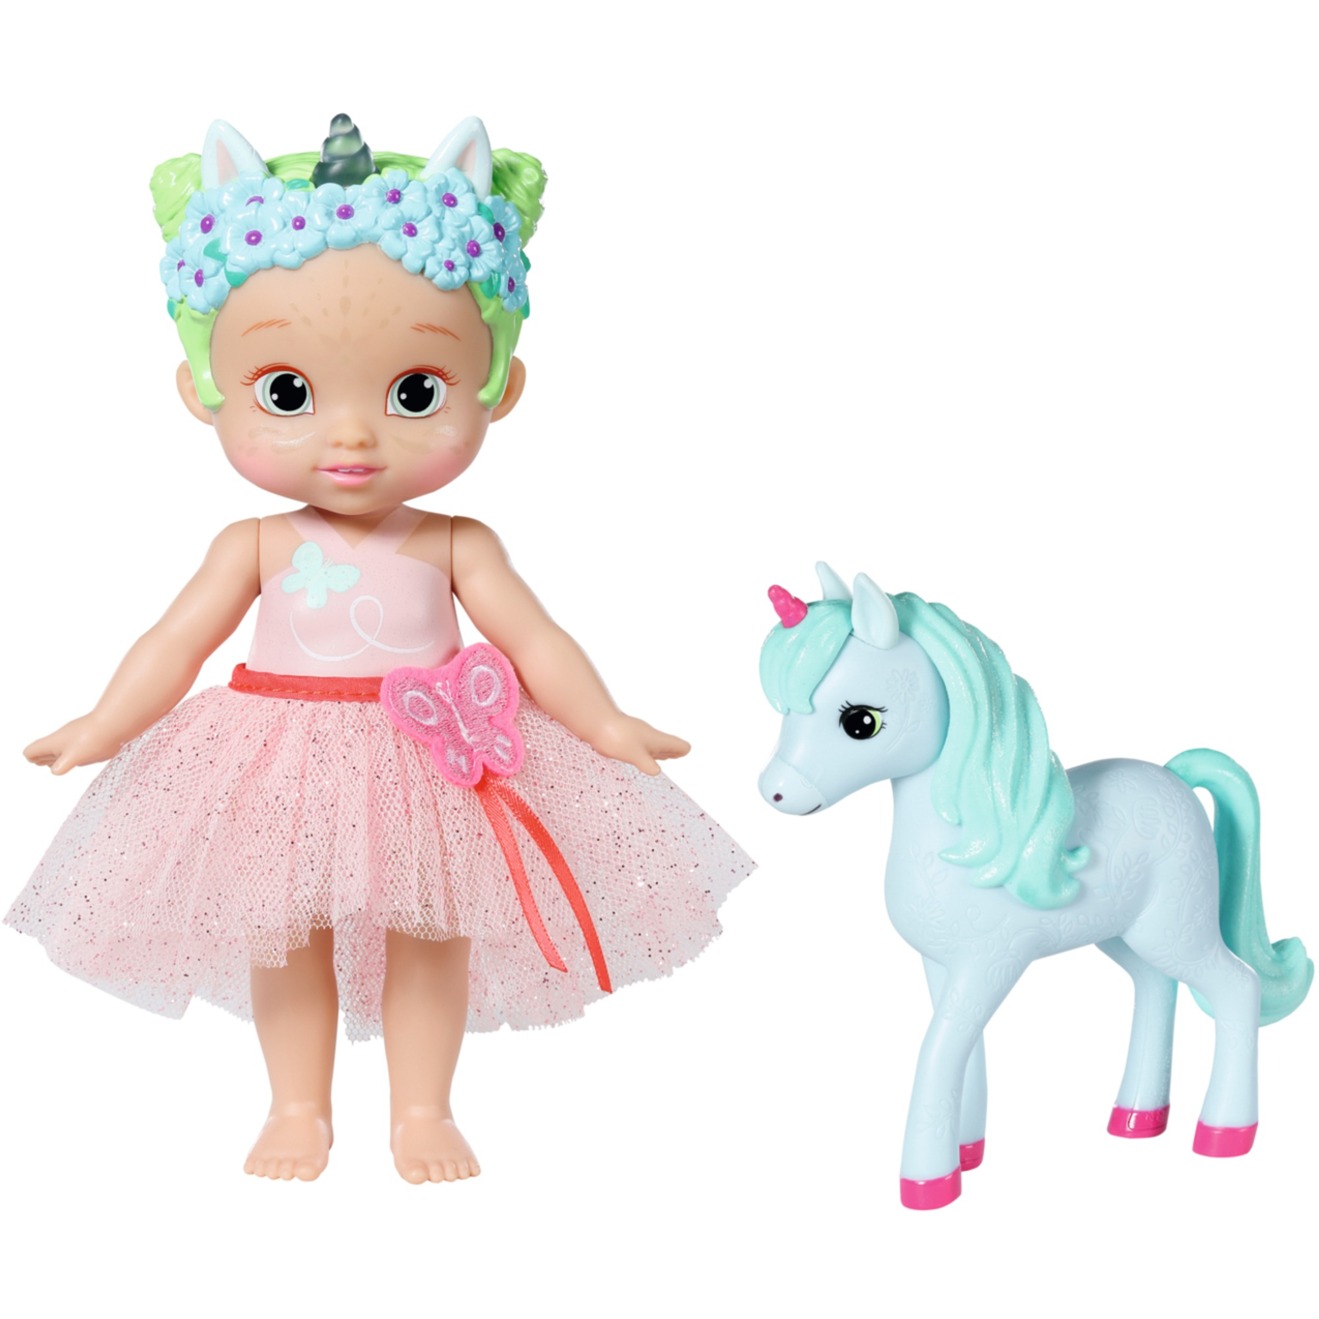 BABY born® Storybook Prinzessin Una 18 cm, Puppe von Zapf Creation